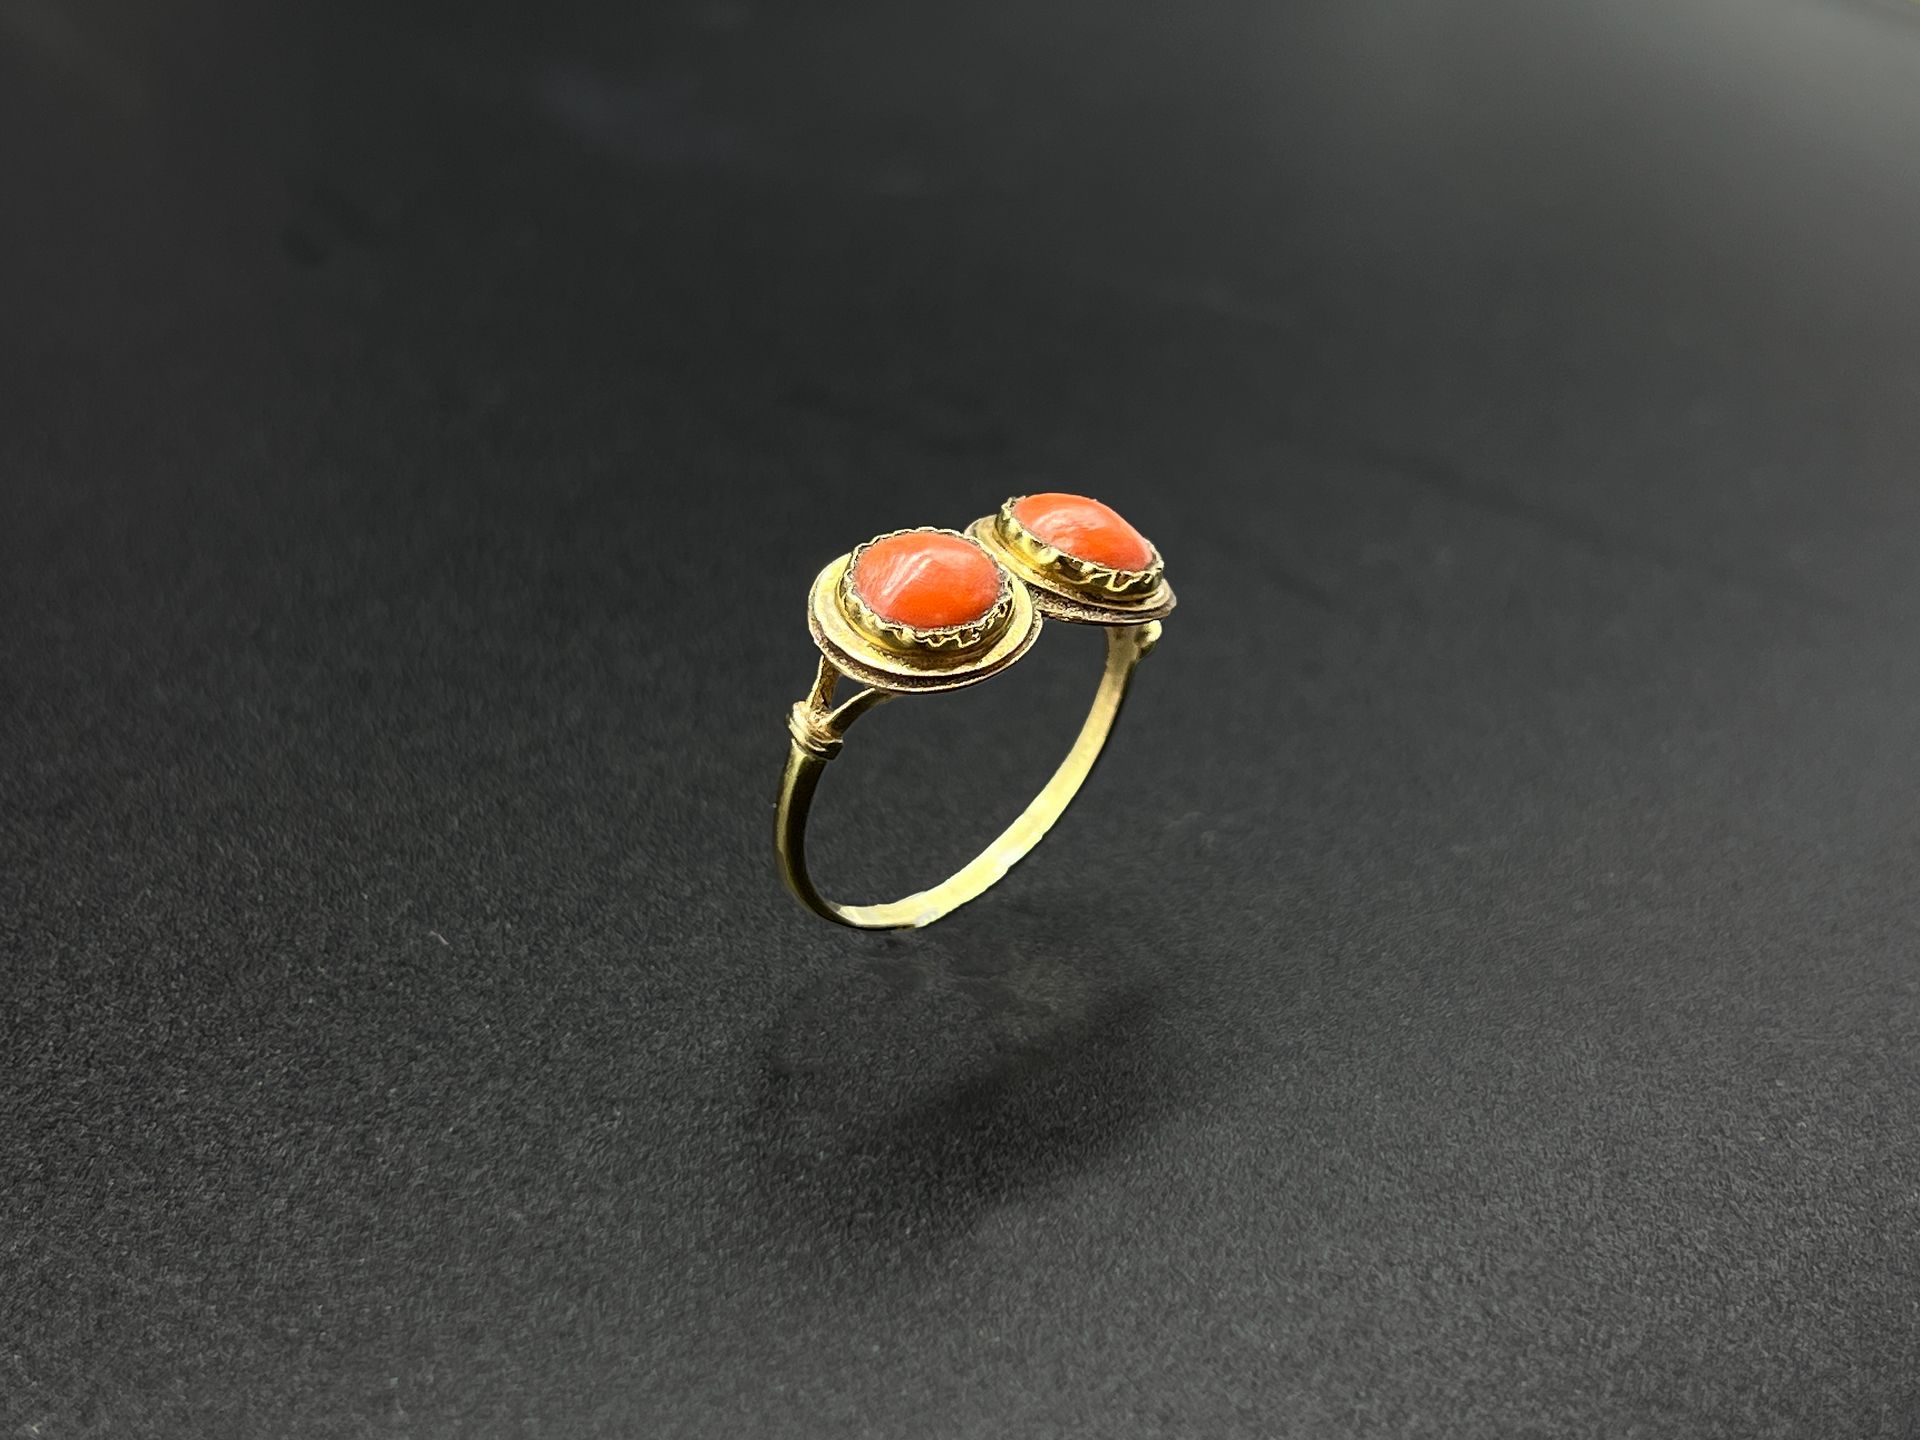 Null Ring aus Gelbgold (750) mit zwei kleinen kreisförmigen Korallencabochons.

&hellip;